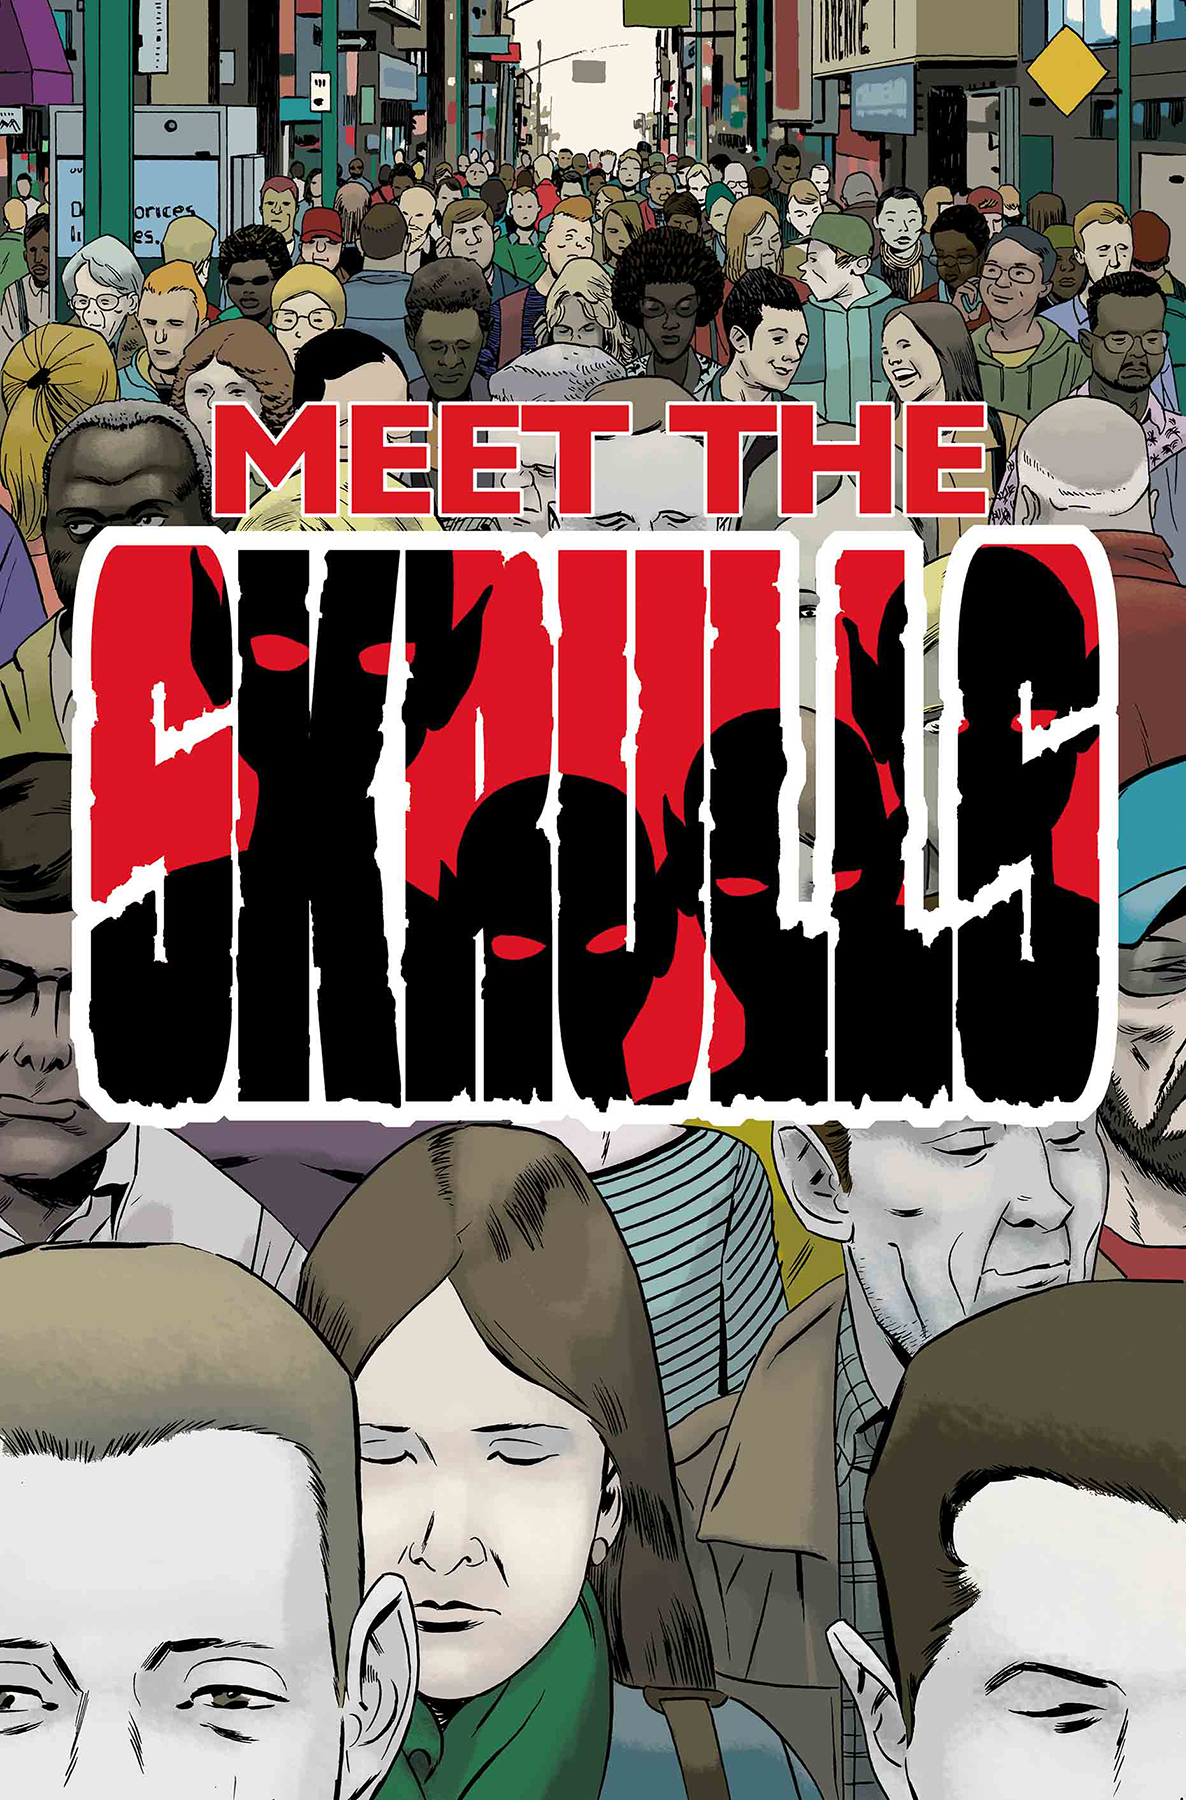 Meet the Skrulls no. 5 (5 of 5) (2019 Series)